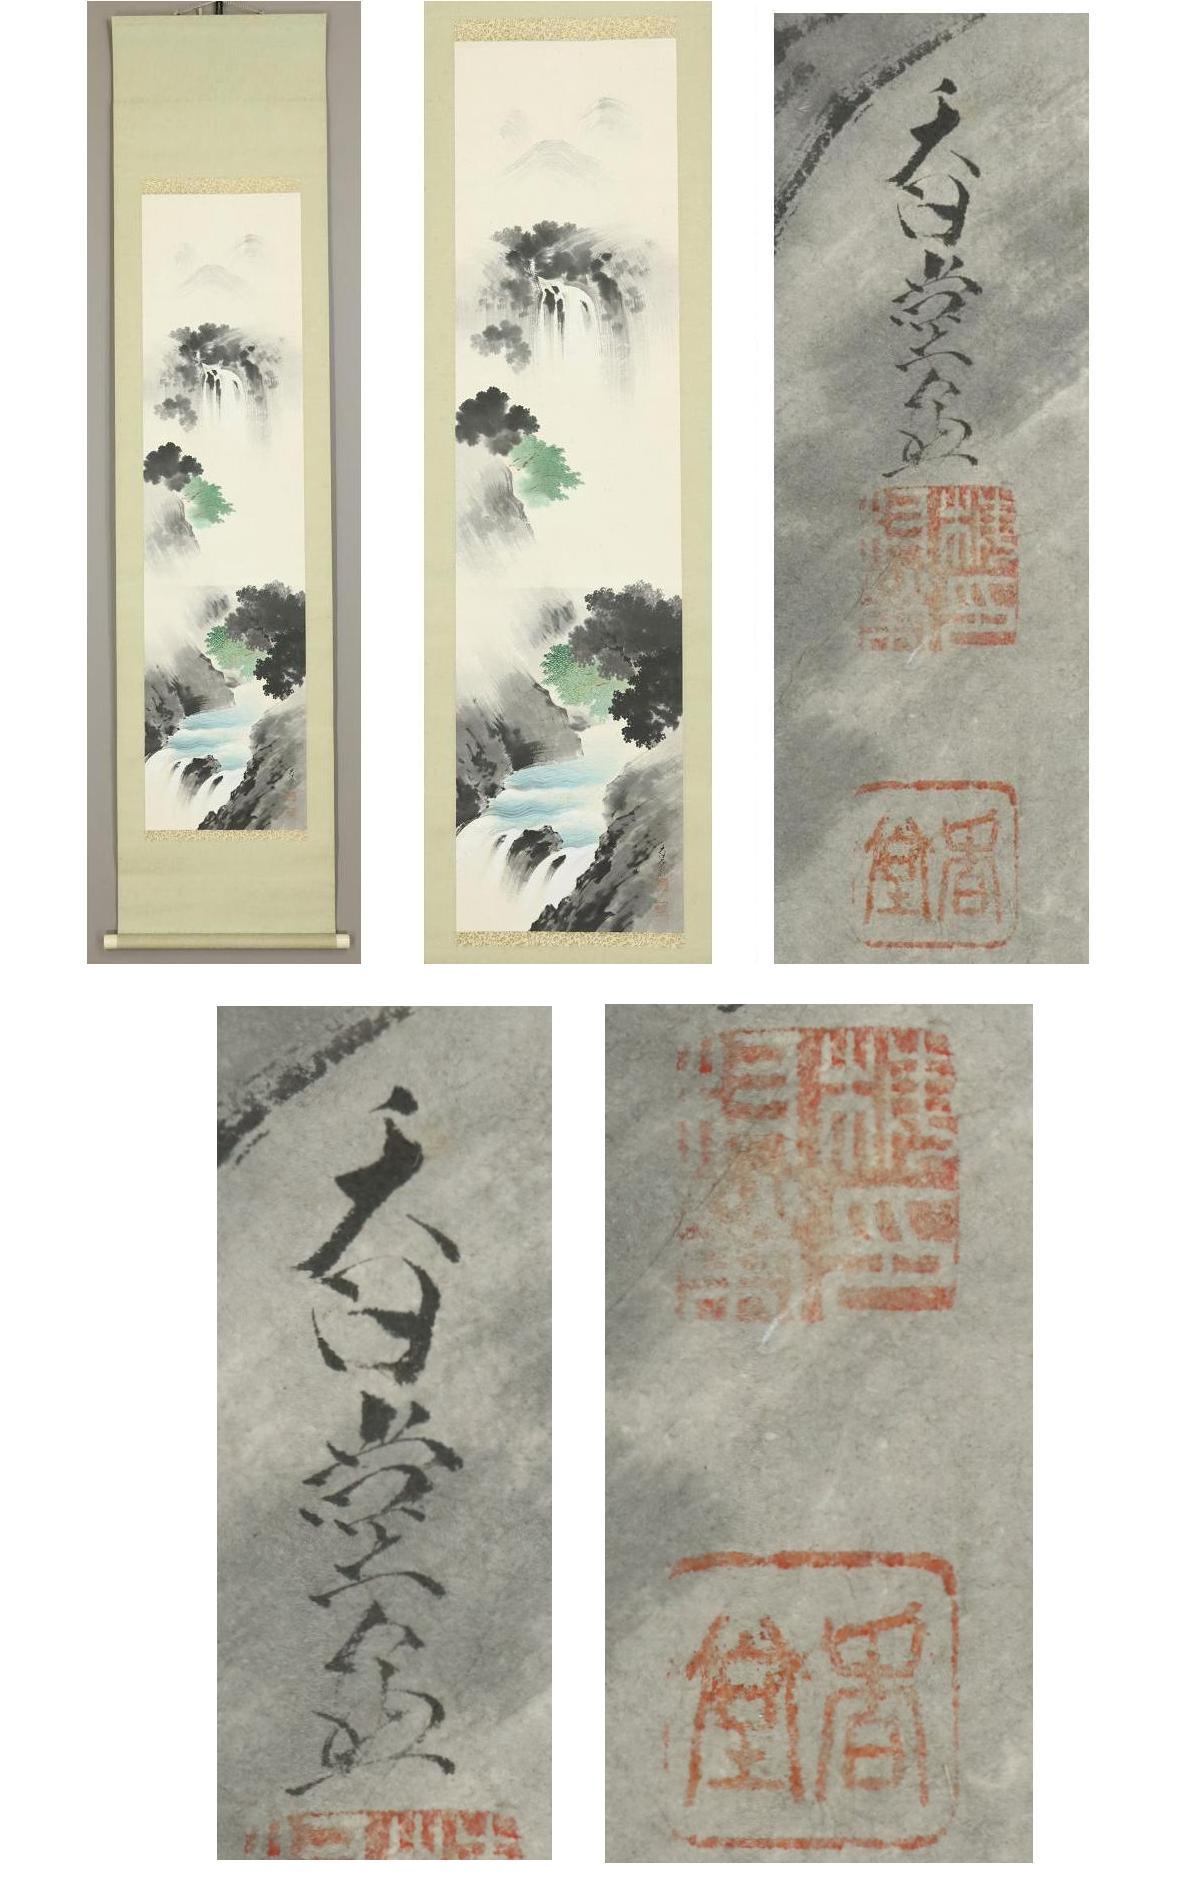 [Authentic work] ◆ Kodo Umemura ◆ Diagram of Kiyoshi Miyama ◆ Master: Yoshifumi Kikuchi ◆ Co-box ◆ Handpainted ◆ Paper ◆ Hanging scroll ◆

Kodo Umemura Born in Osaka in 1898

He graduated from Kyoto City Painting College.
He studied under Yoshifumi